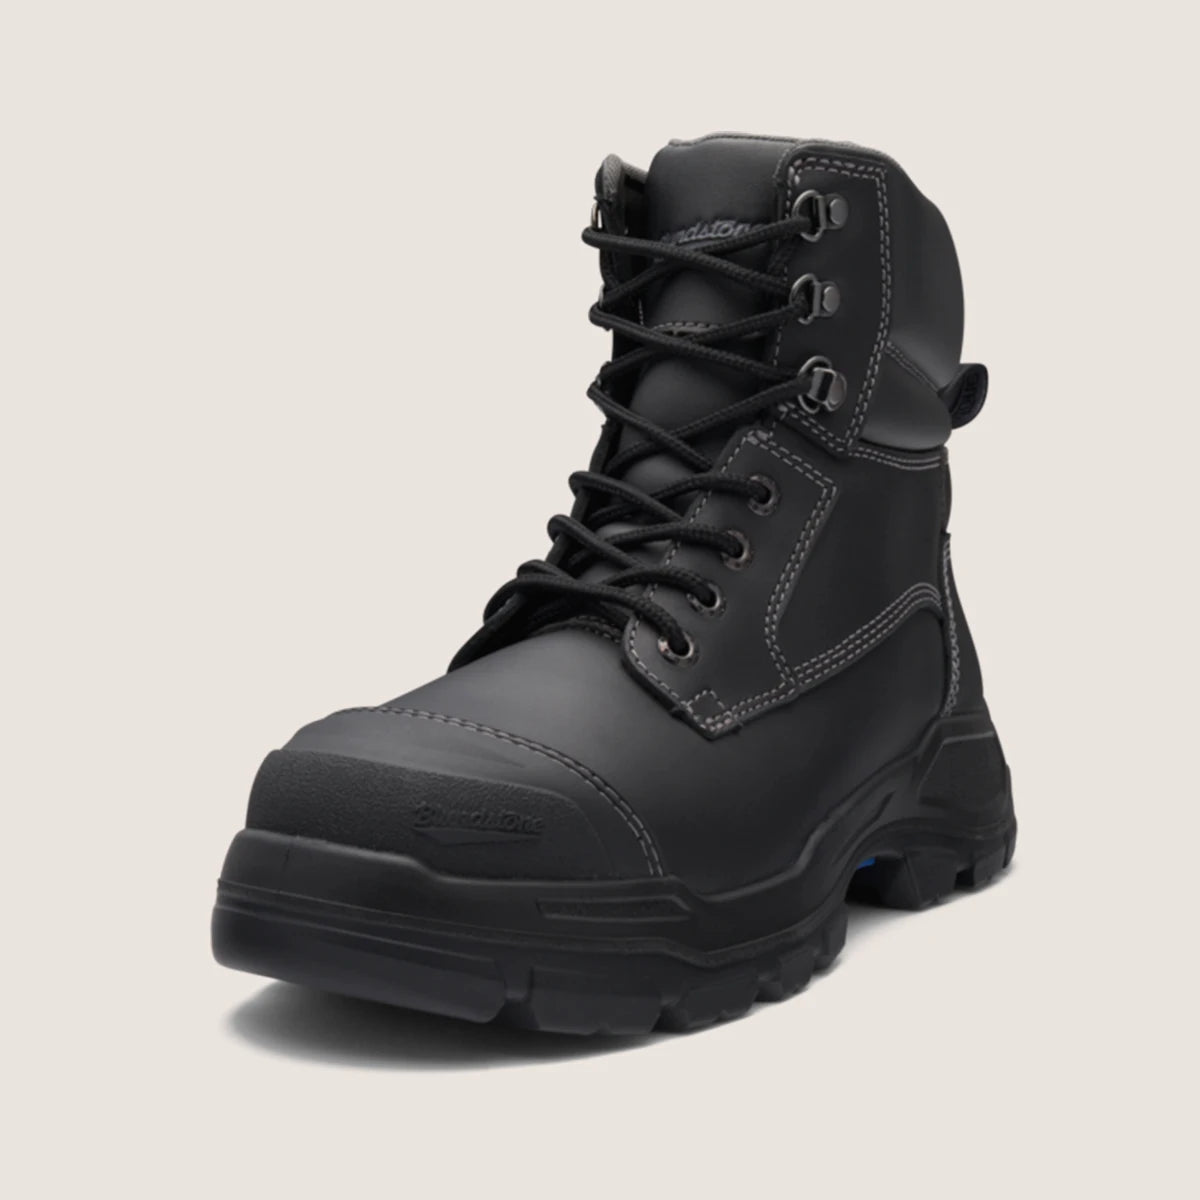 Blundstone Unisex Rotoflex Safety Boots (9061)